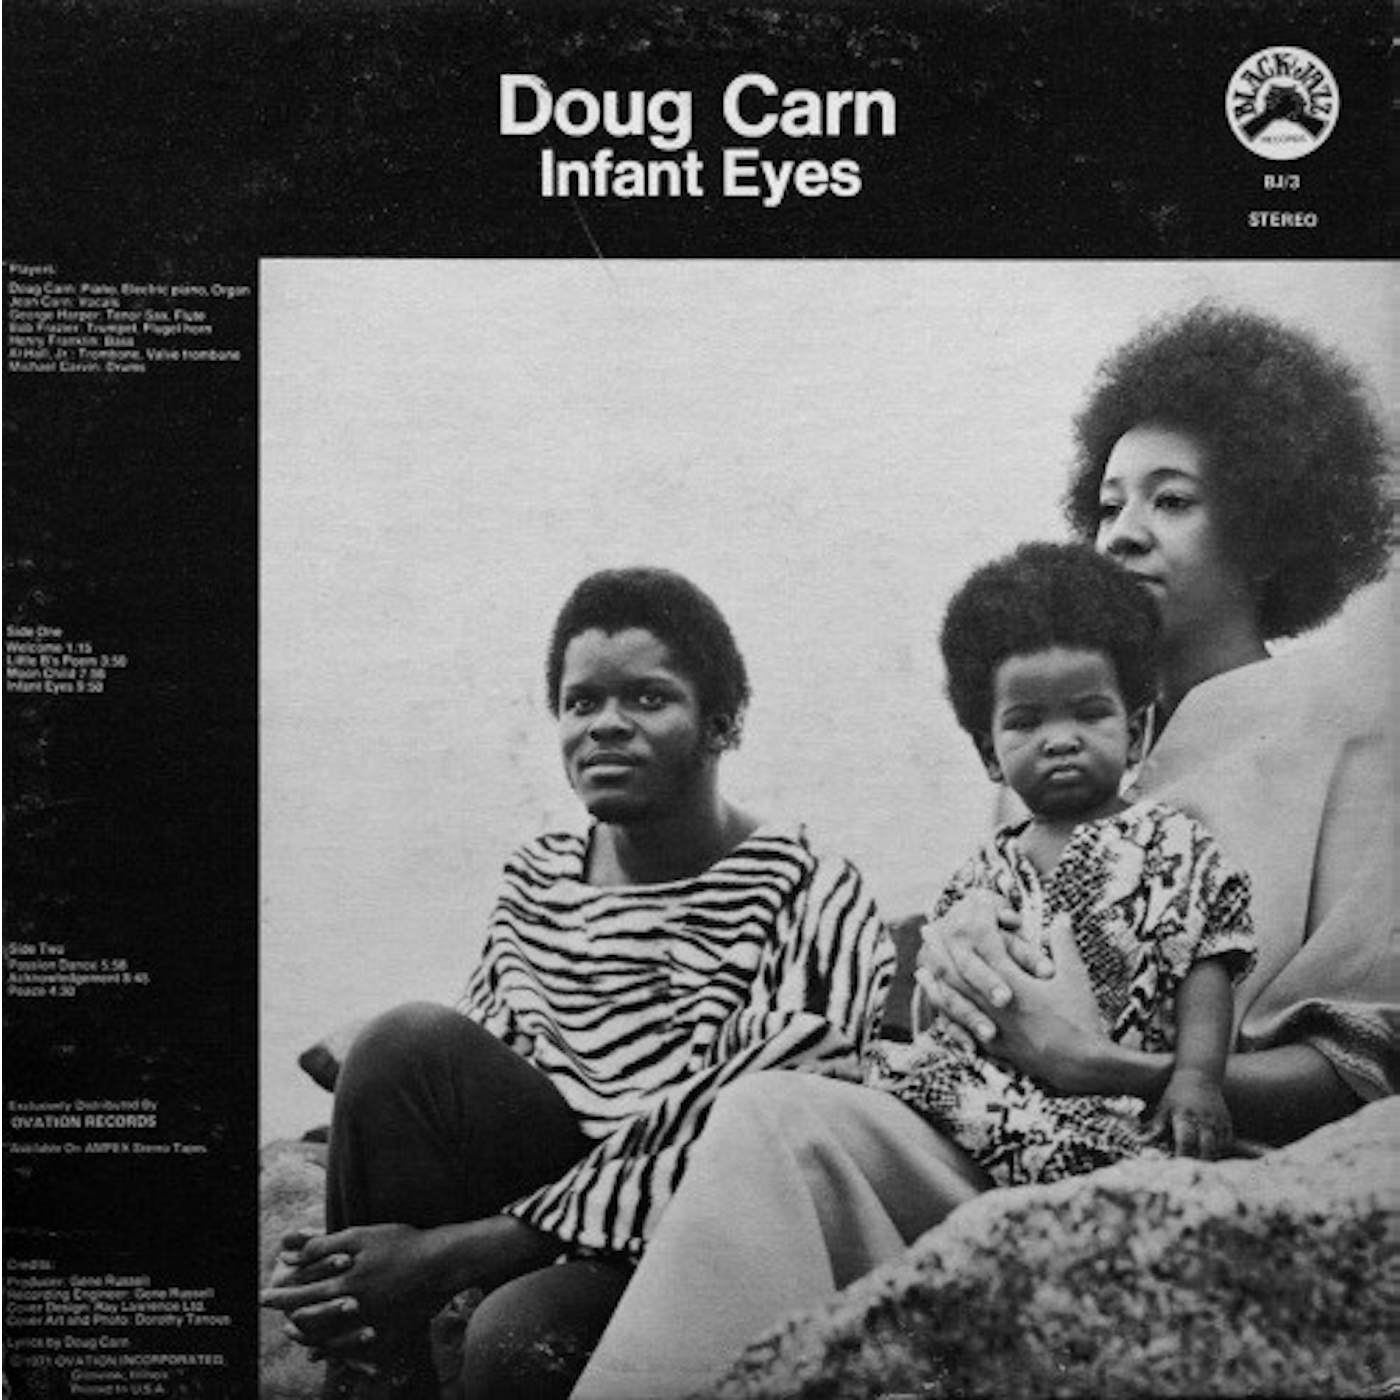 Doug Carn Infant Eyes Vinyl Record